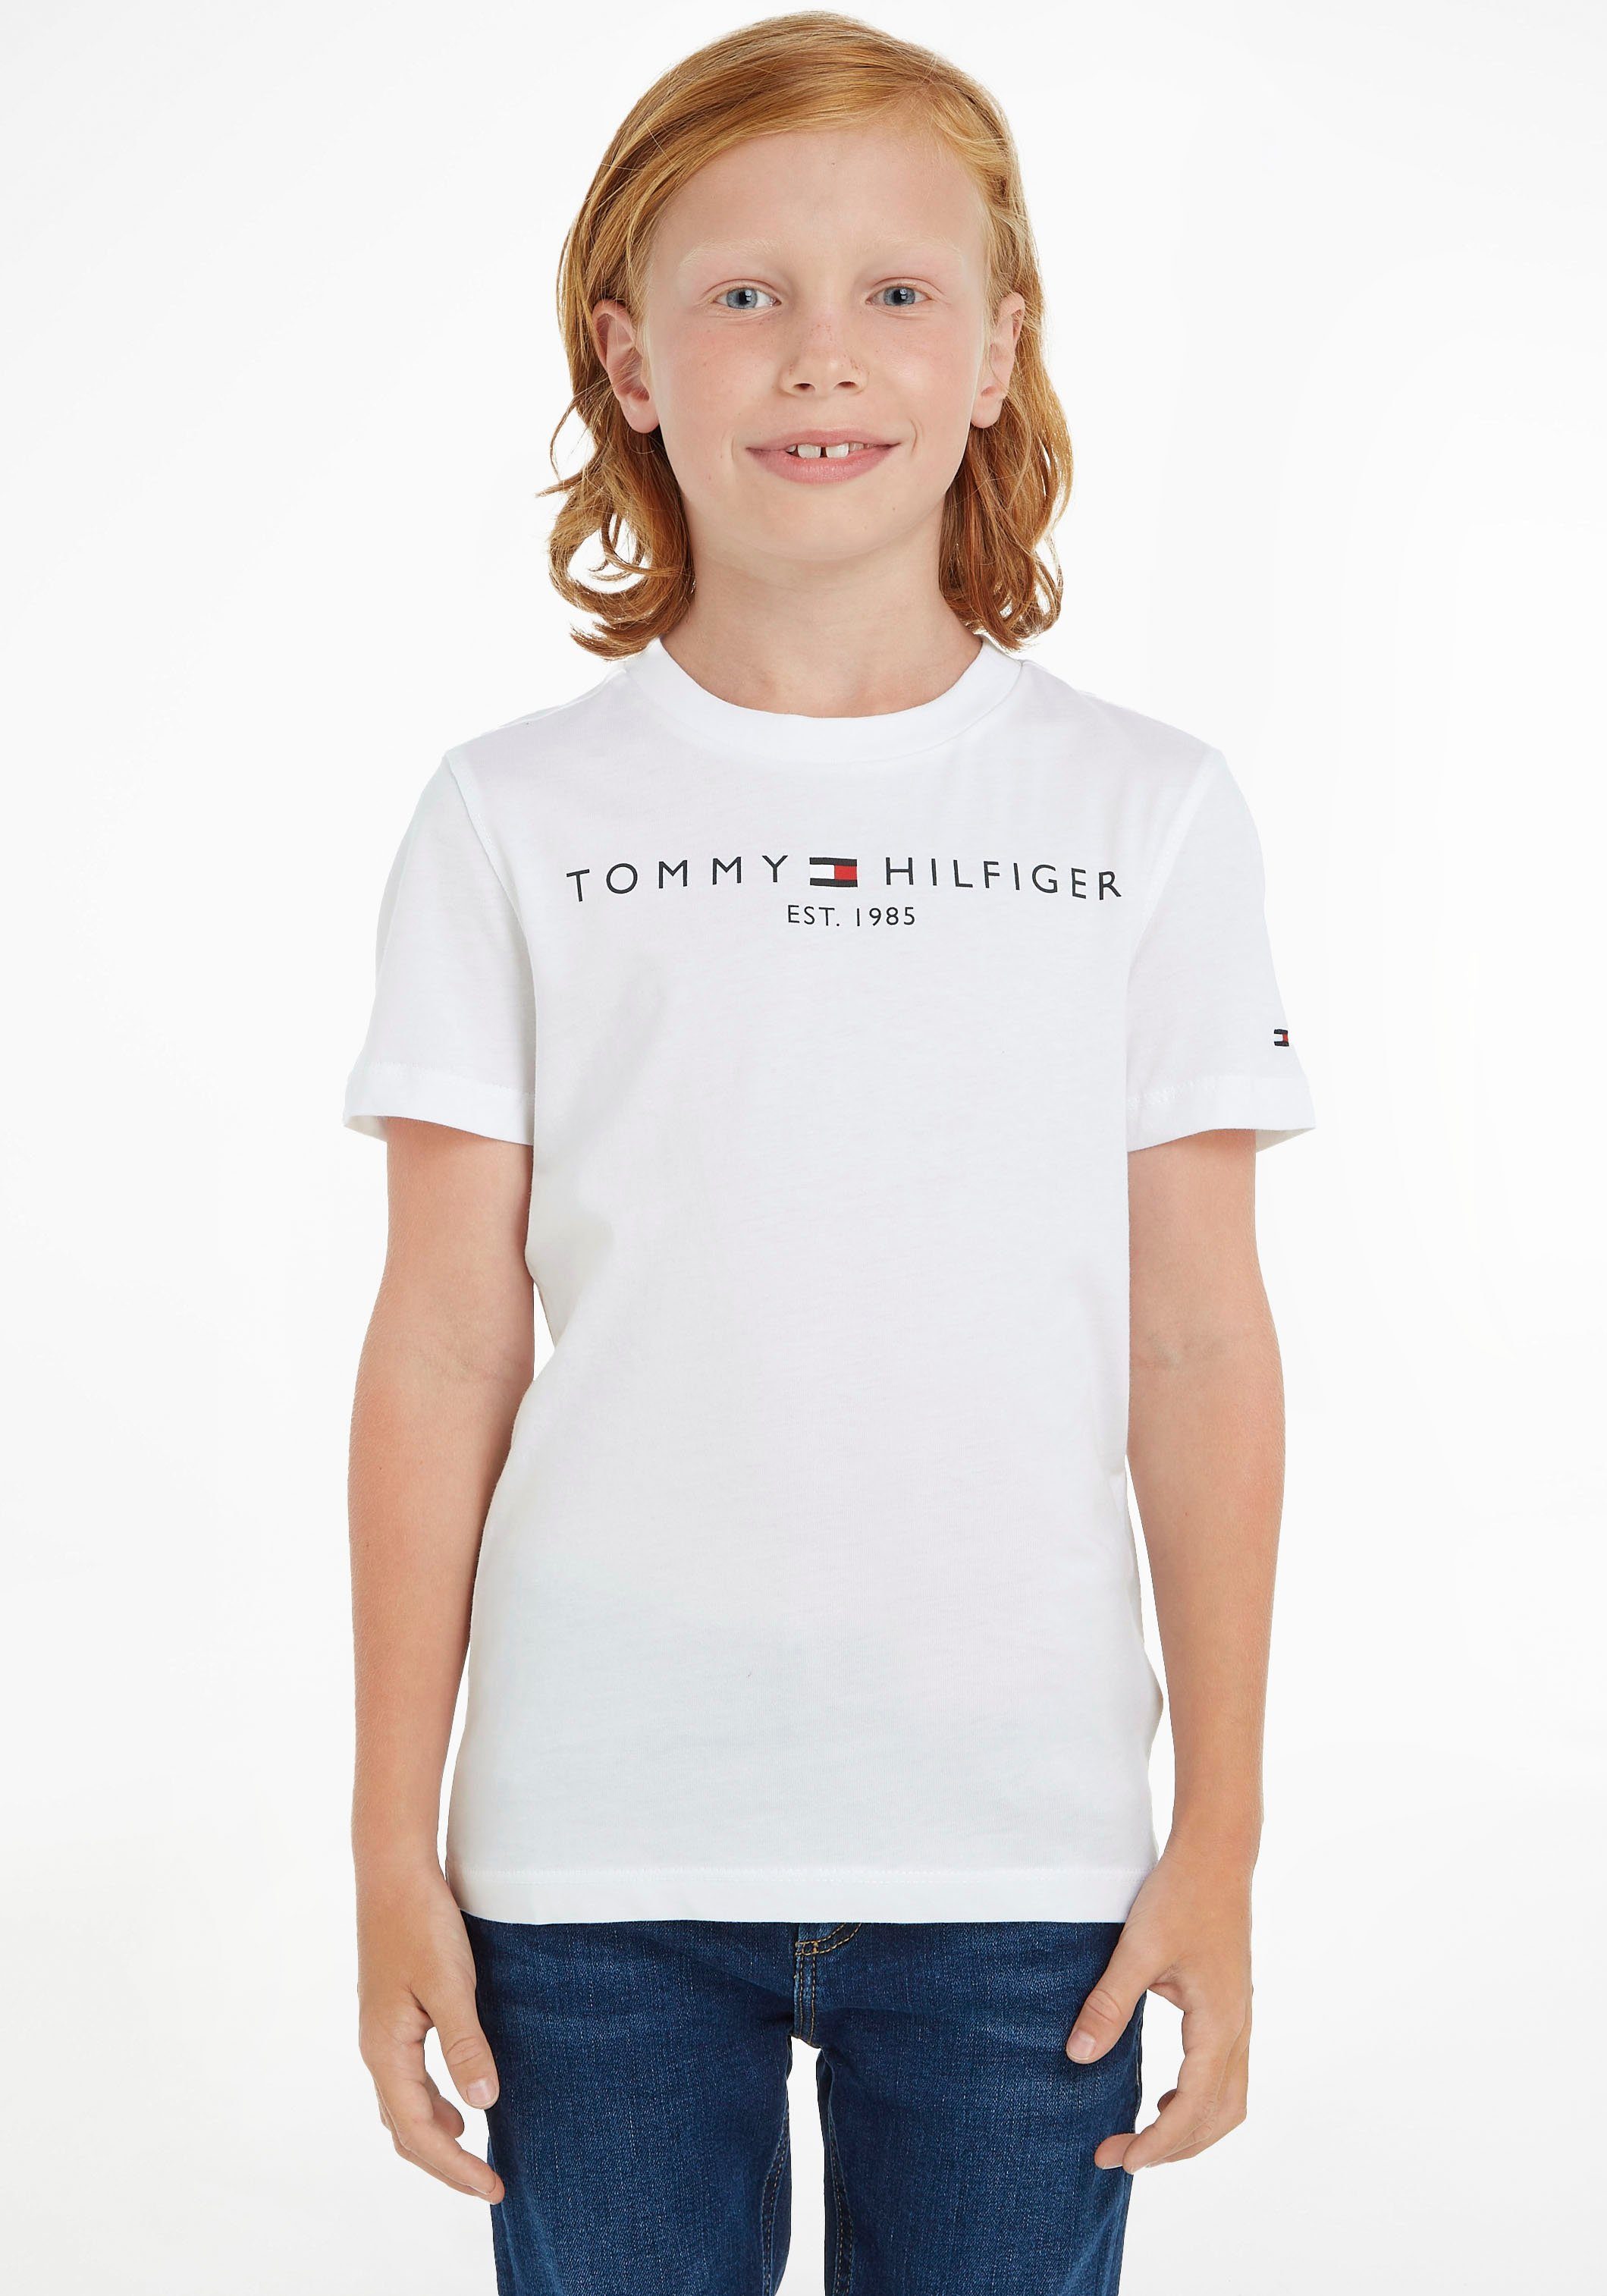 Jungen und Mädchen TEE T-Shirt Junior Kinder MiniMe,für Kids Hilfiger Tommy ESSENTIAL